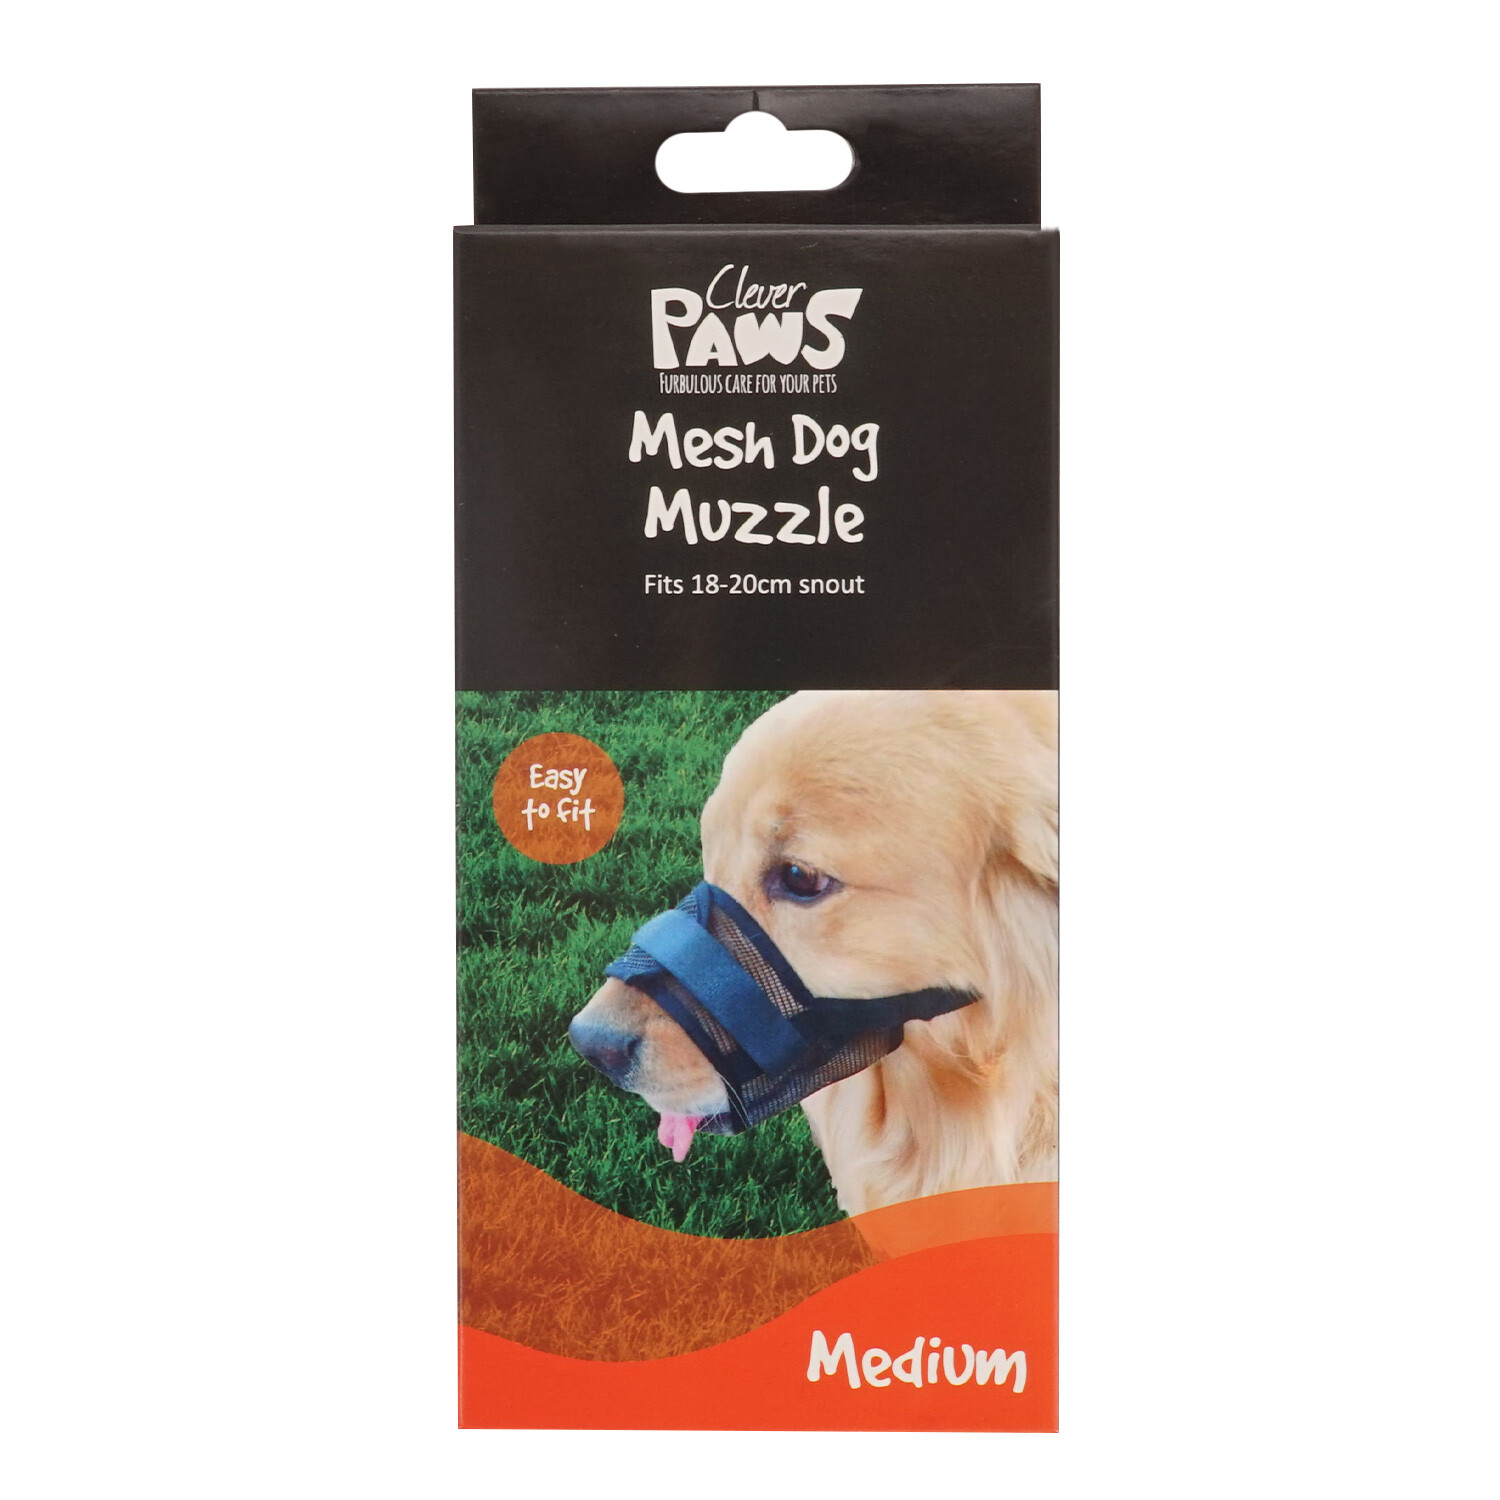 Clever Paws Mesh Dog Muzzle  - Black / Medium Image 1